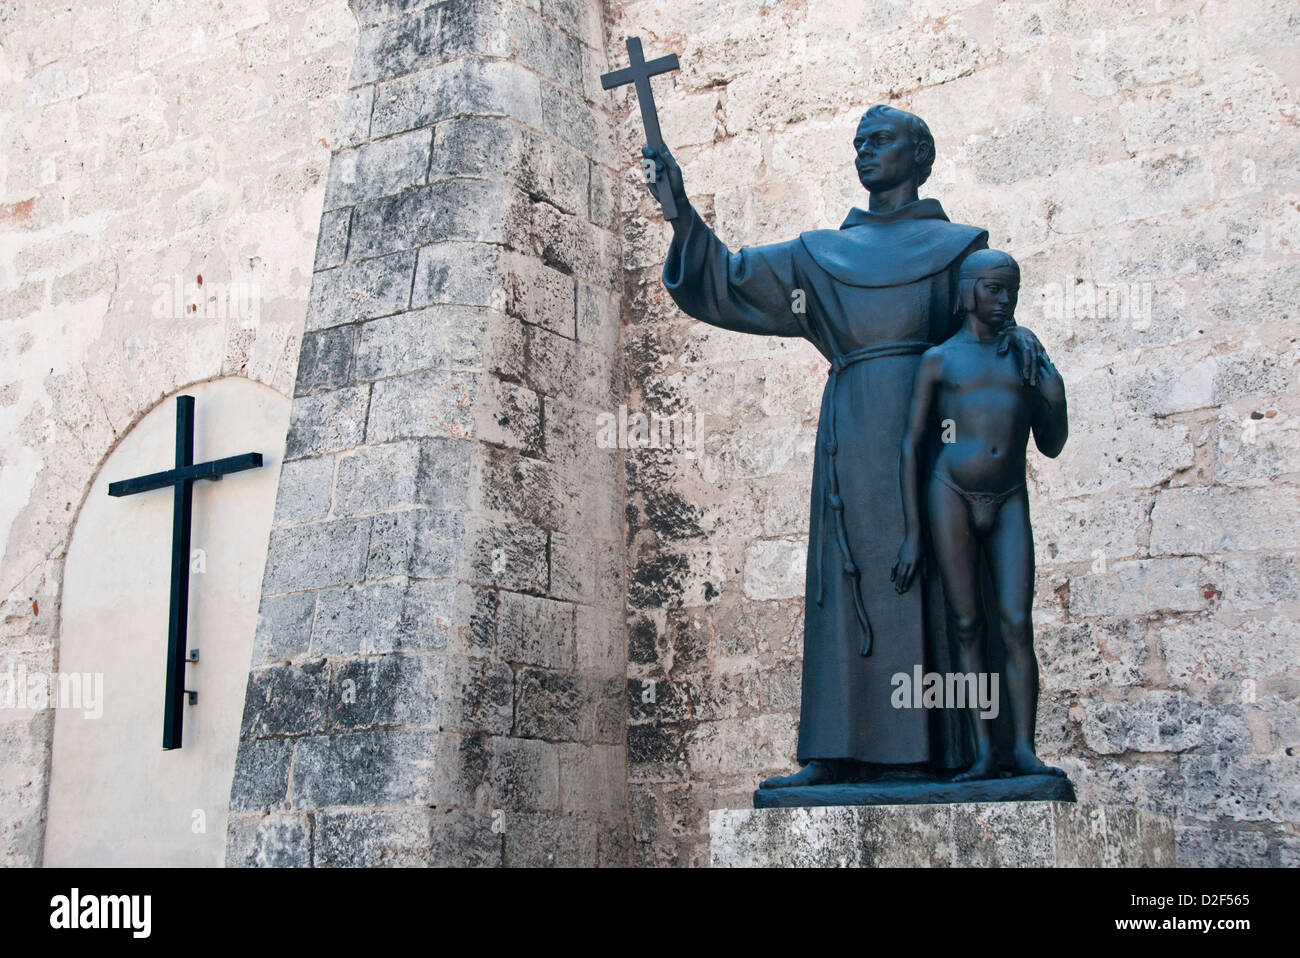 Statue of St Francis of Assisi and small boy, Plaza de San Francisco, Habana Vieja, Havana, Cuba Stock Photo